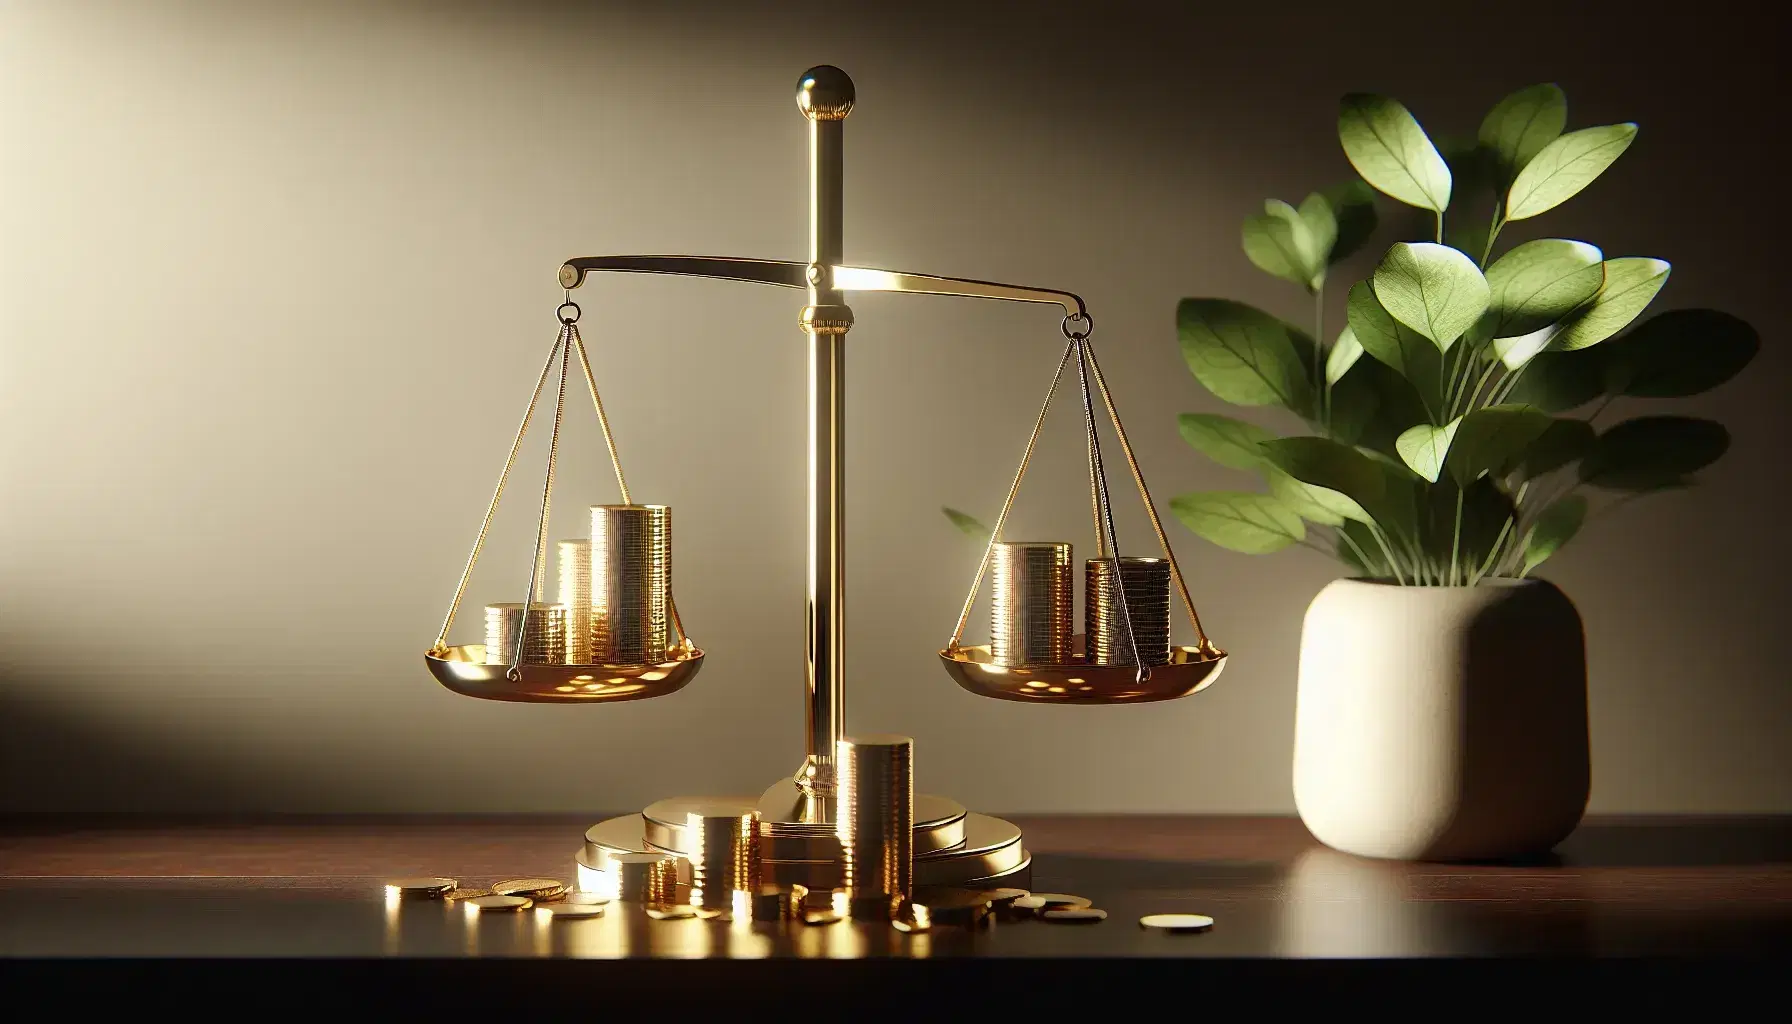 Balanza dorada equilibrada sobre escritorio de madera oscura con platos vacíos, junto a monedas de oro apiladas y planta verde en maceta blanca.